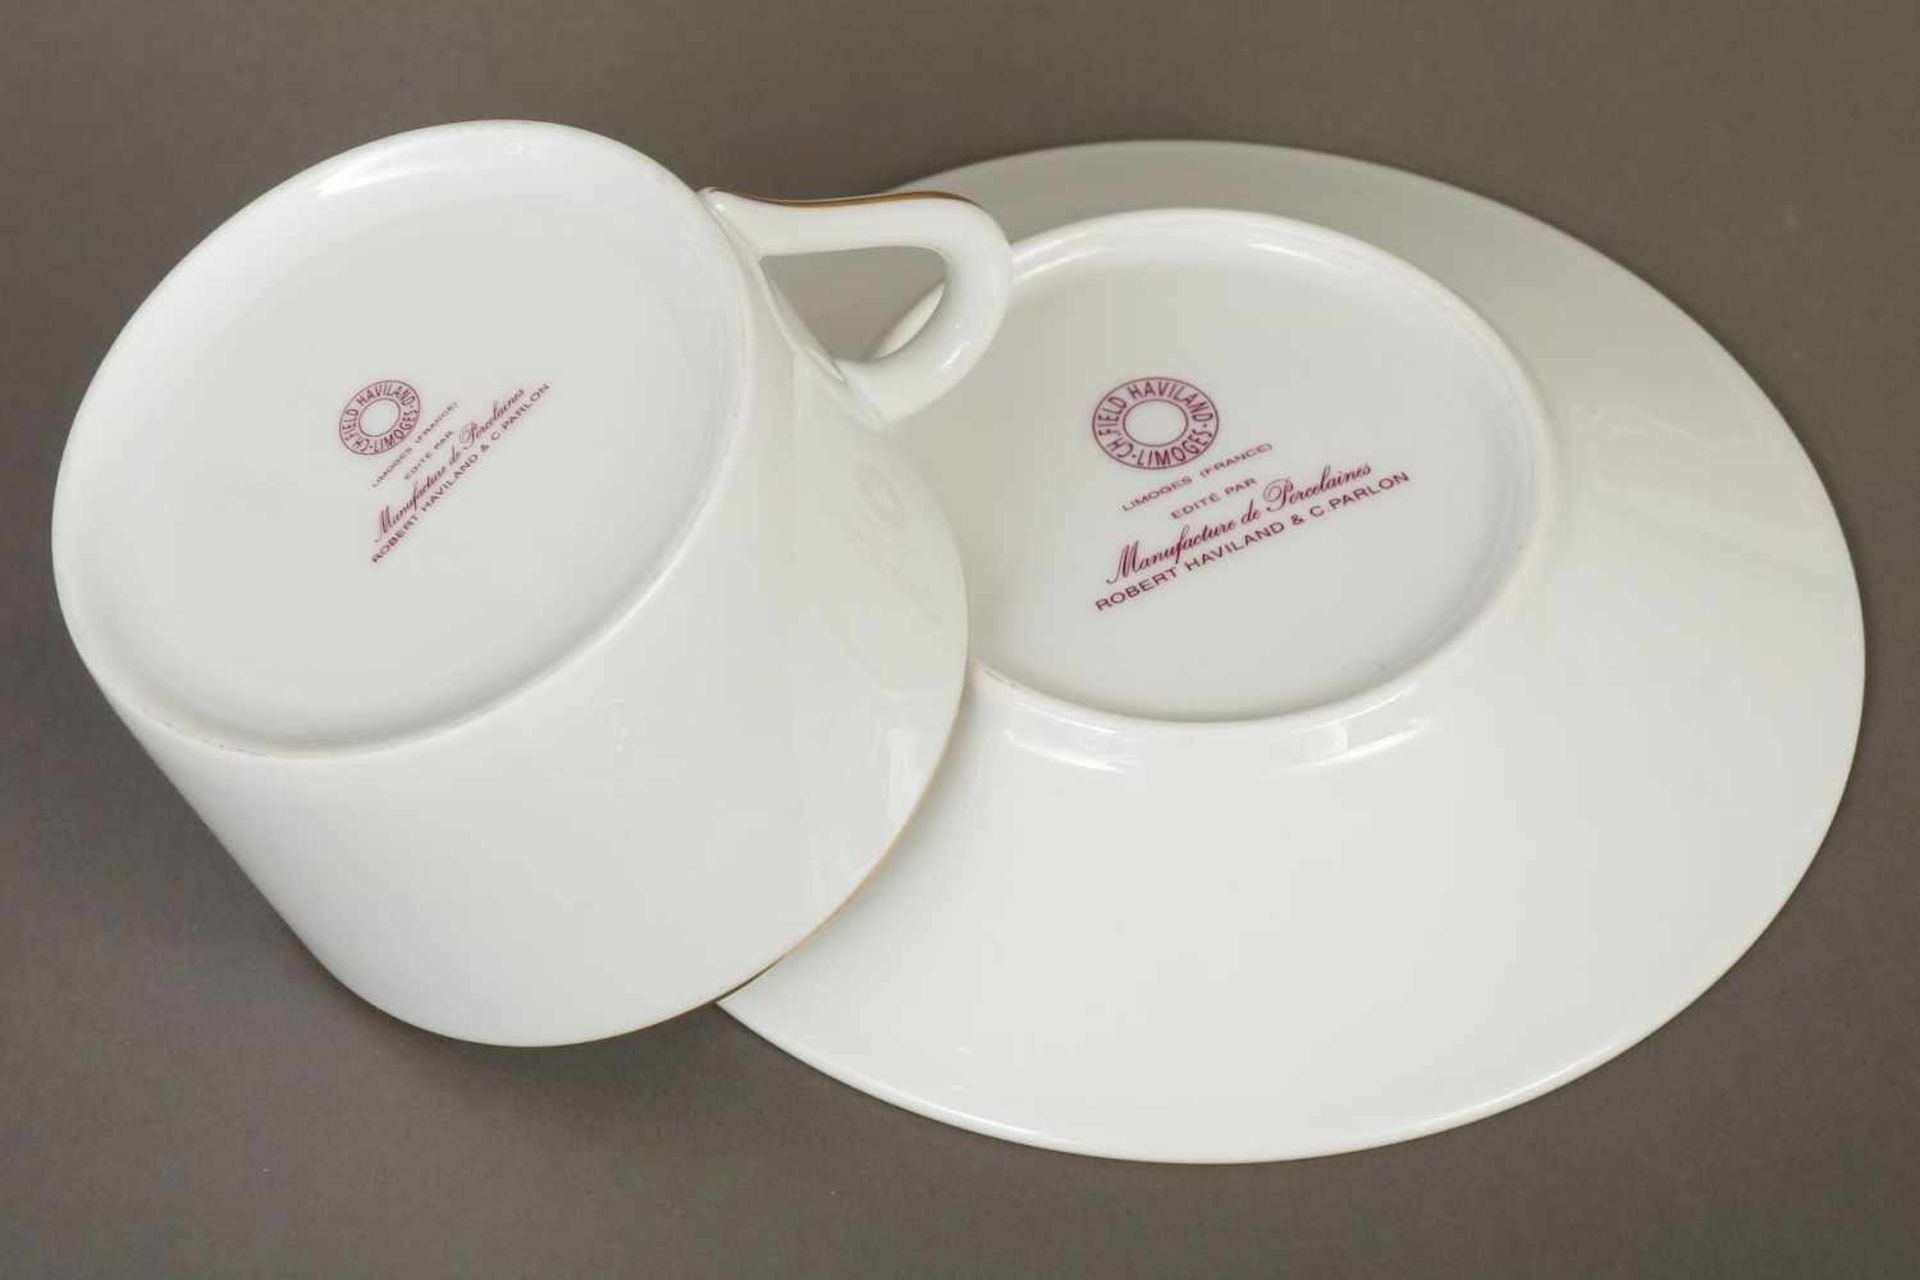 HAVILAND LIMOGES Speise- und KaffeeserviceWeißporzellan mit feinem Goldrand, schlichte Form, - Image 2 of 2